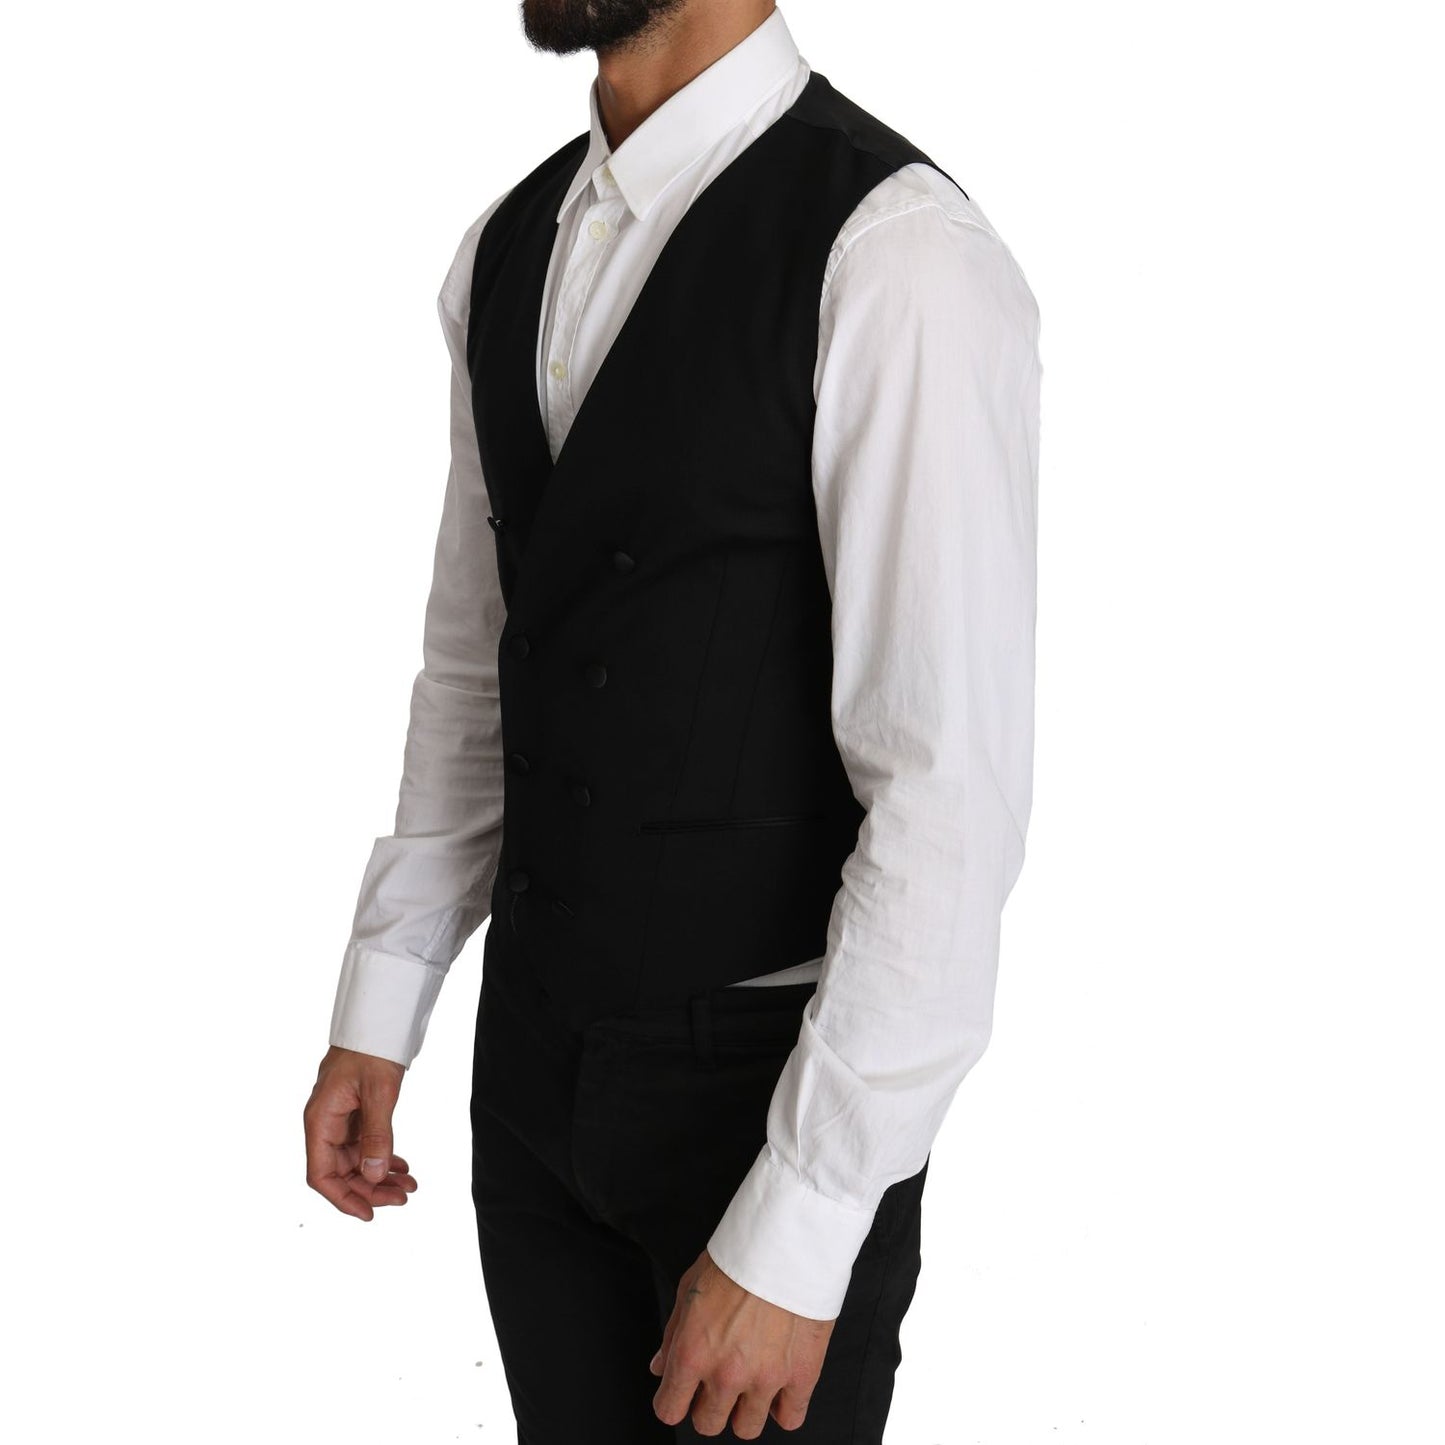 Dolce & Gabbana Sleek Double Breasted Slim Fit Wool Vest gray-wool-double-breasted-waistcoat-vest IMG_1462.jpg